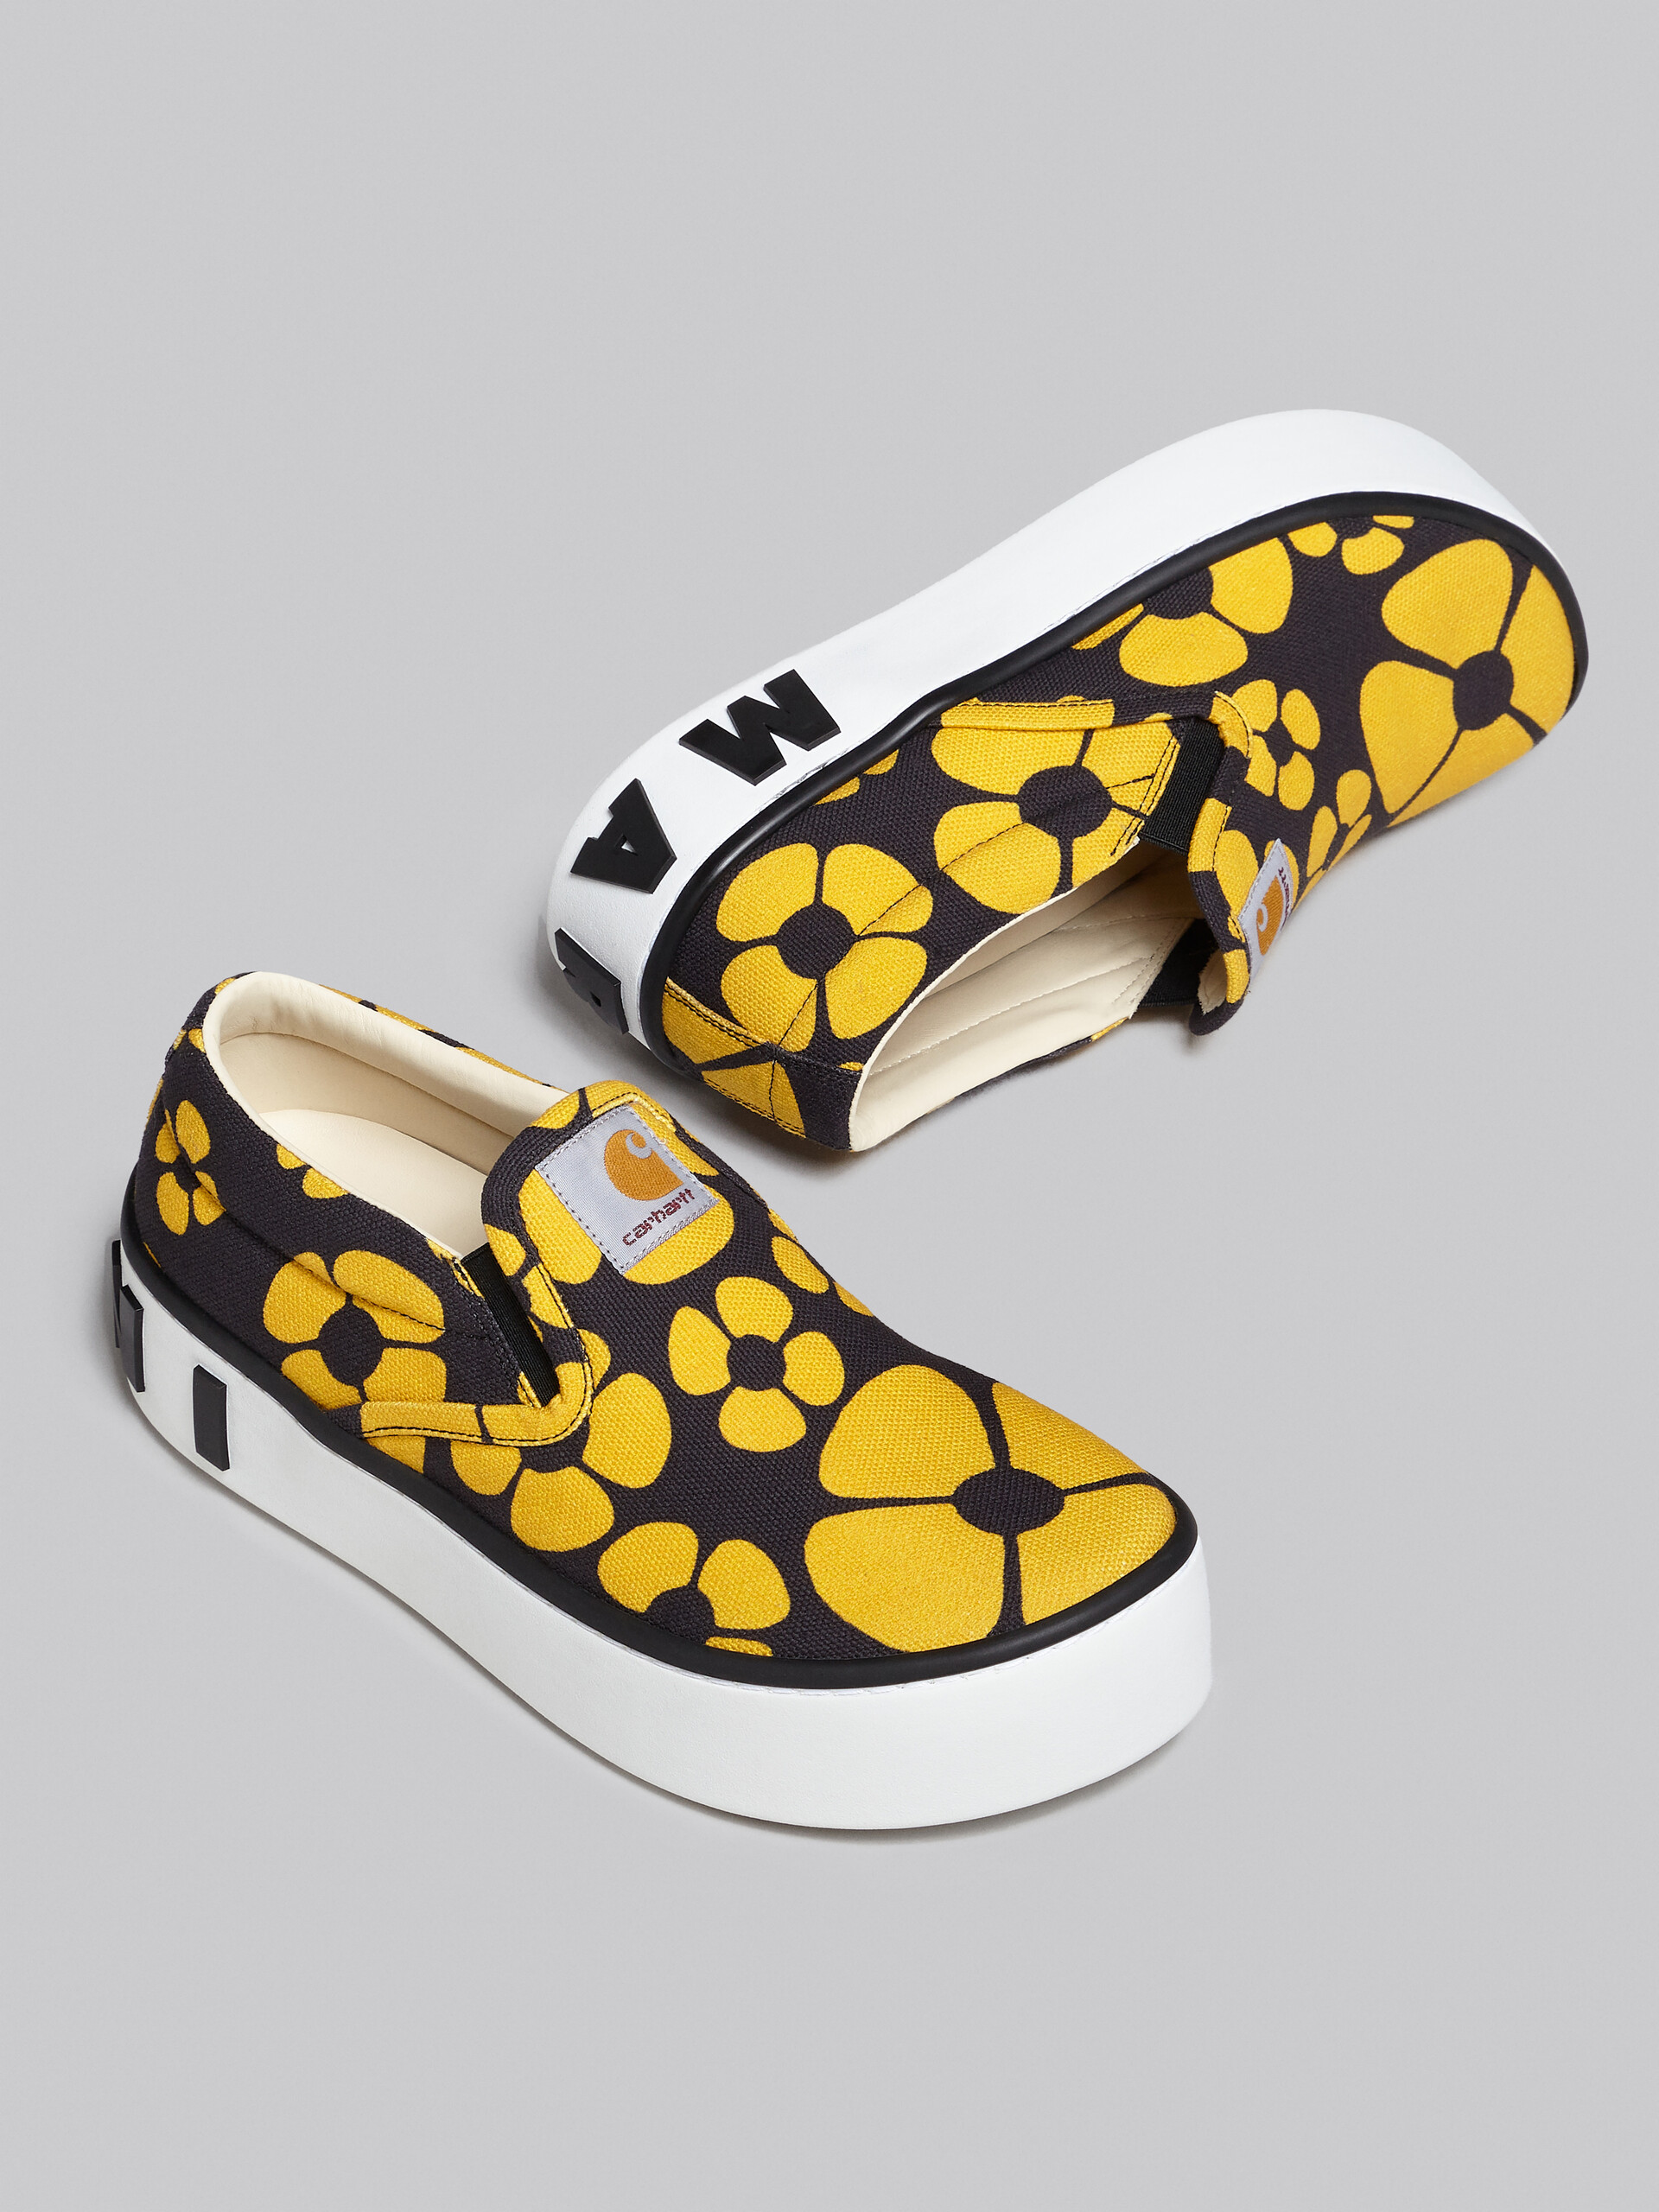 MARNI x CARHARTT WIP - yellow slip-on sneakers - Sneakers - Image 5